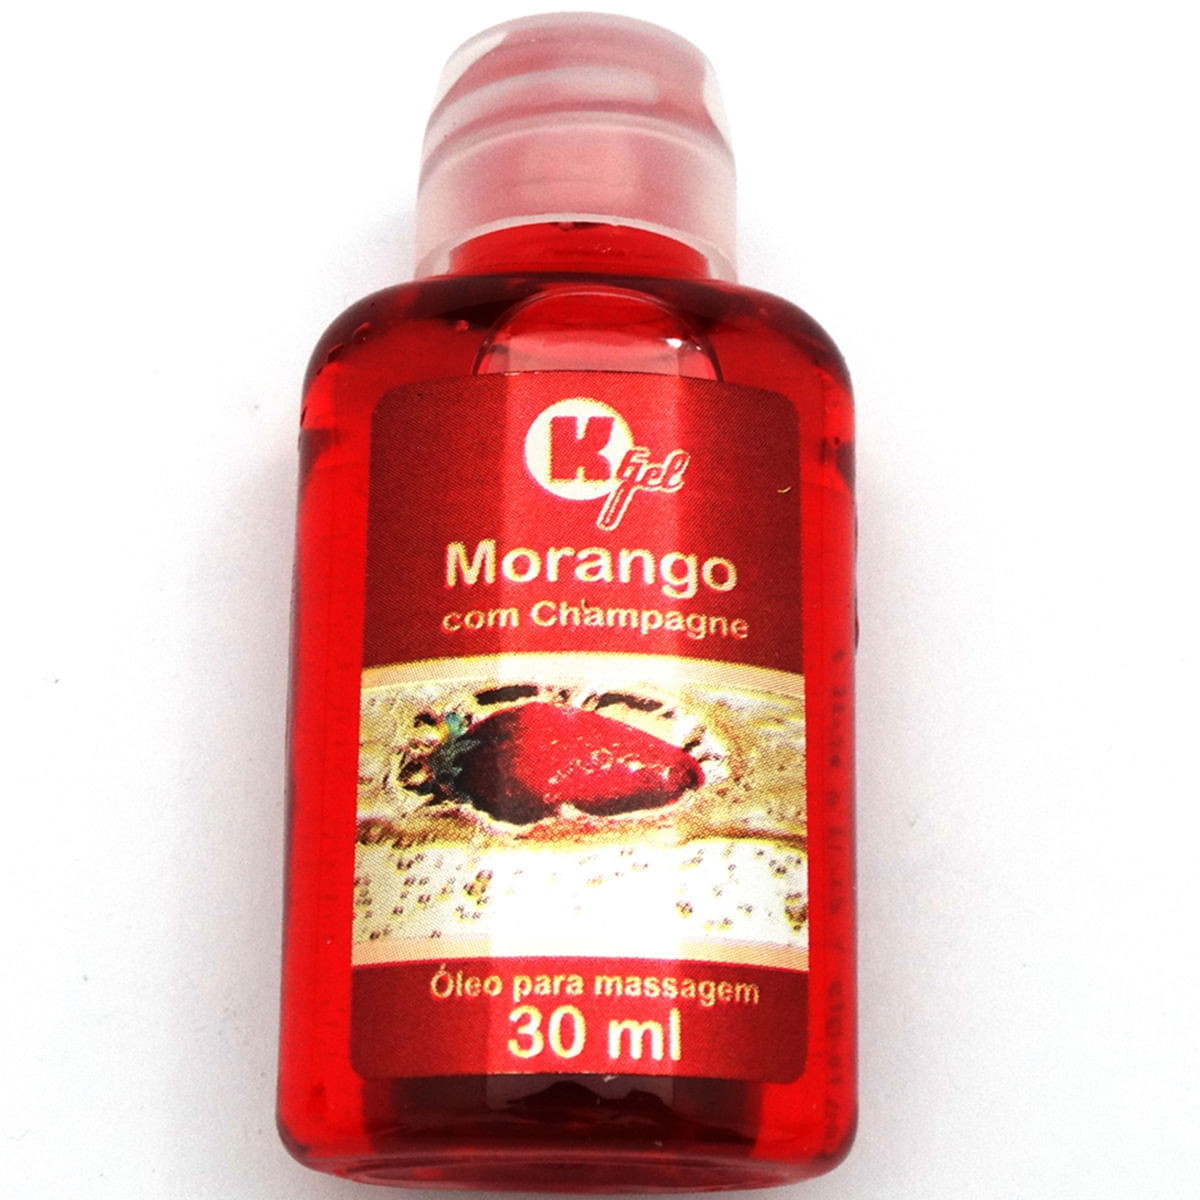 Óleo Para Massagem Hot Morango com Champagne K-gel - Miess